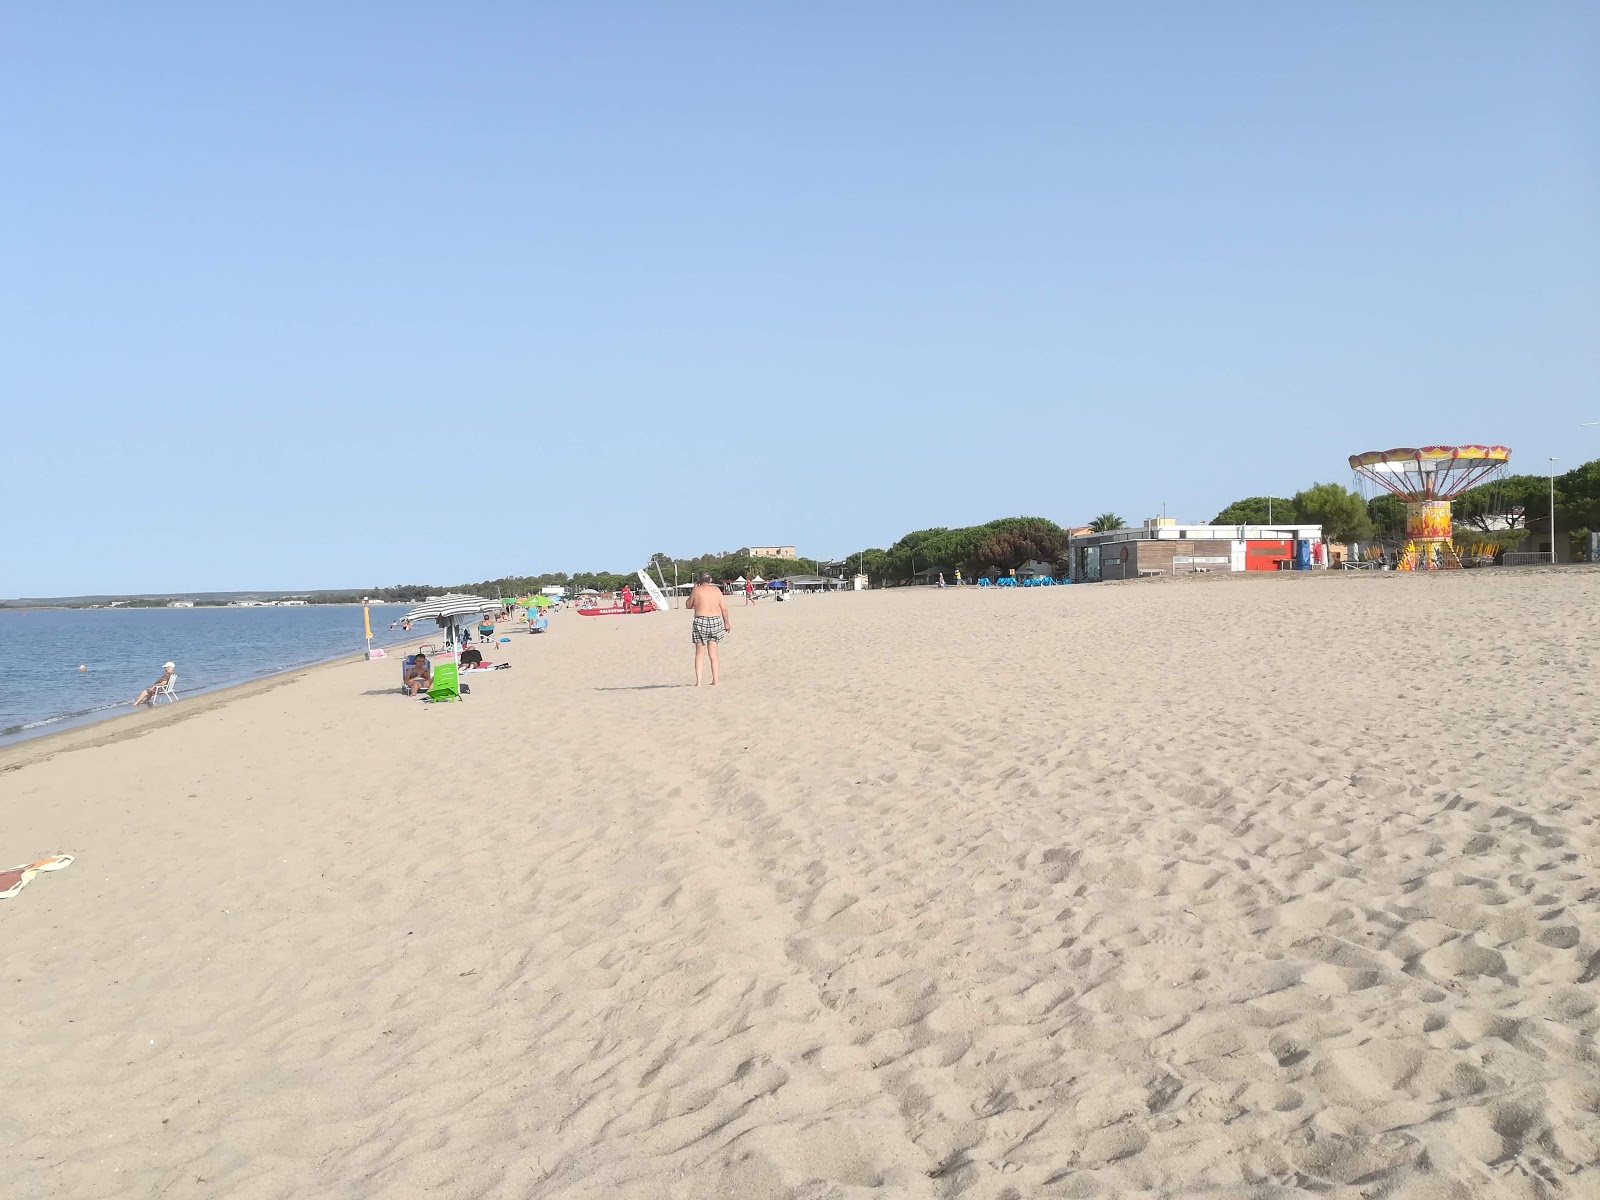 托雷格兰德海滩的照片 - 受到放松专家欢迎的热门地点